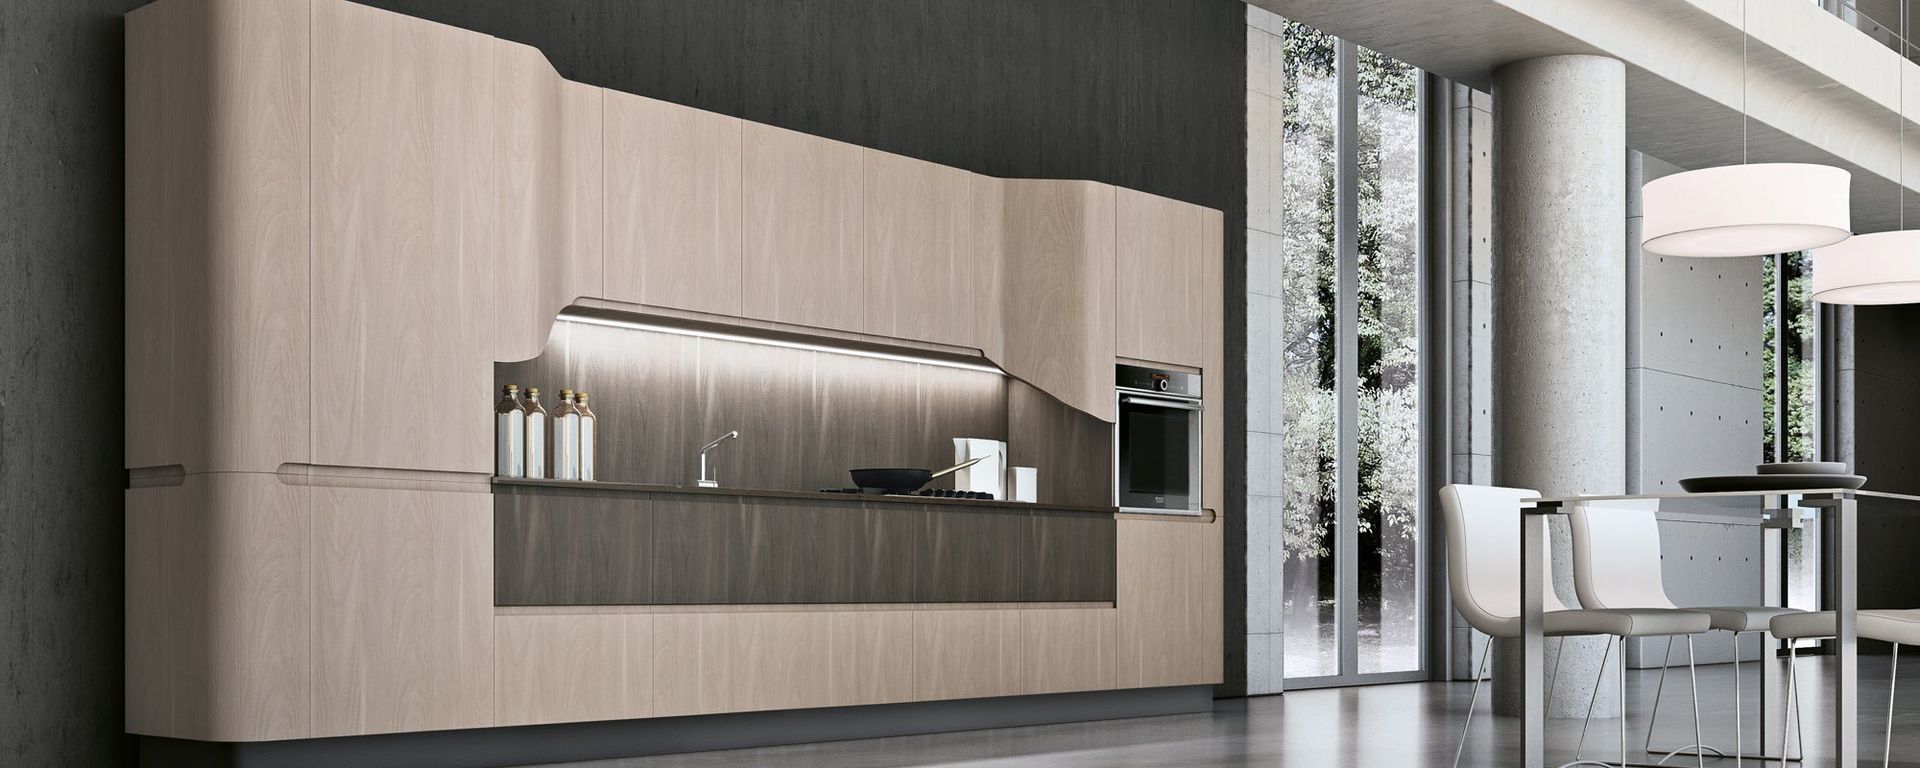 vista laterale di cucina moderna in legno a scomparsa - BRING